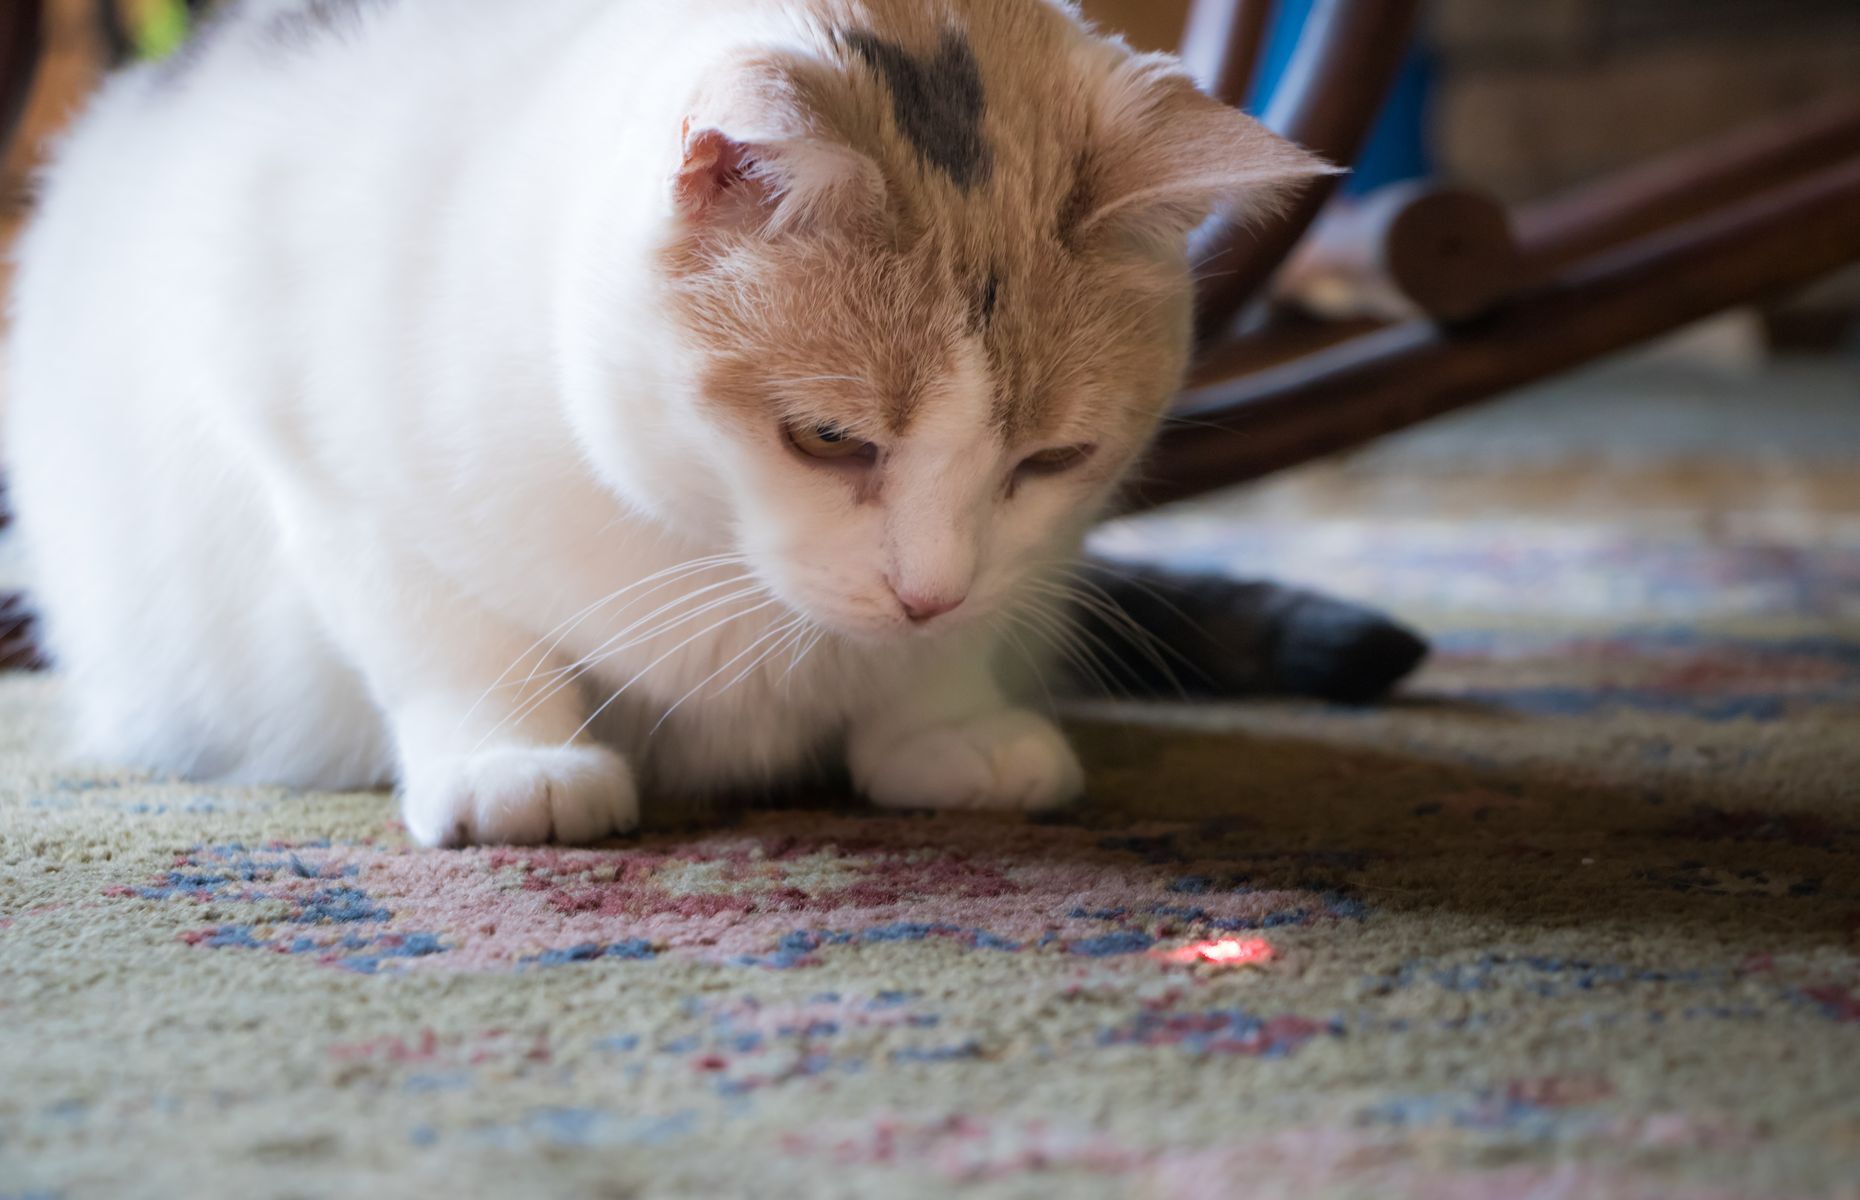 <p>Le chat est un prédateur et le jeu lui sert à imiter la chasse. Jouer avec un pointeur laser est bien drôle pour le maître, mais n’apporte rien au chat, car il devient vite frustré de ne rien attraper. Quant à la ficelle, si le chat l’ingère, elle peut être très dangereuse pour son système digestif et une simple période de jeu peut aboutir en opération coûteuse. On préfère donc les <a href="https://ca.catinaflat.com/blog/jouets-pour-chats-dangereux">vrais jouets pour chats</a>!</p>